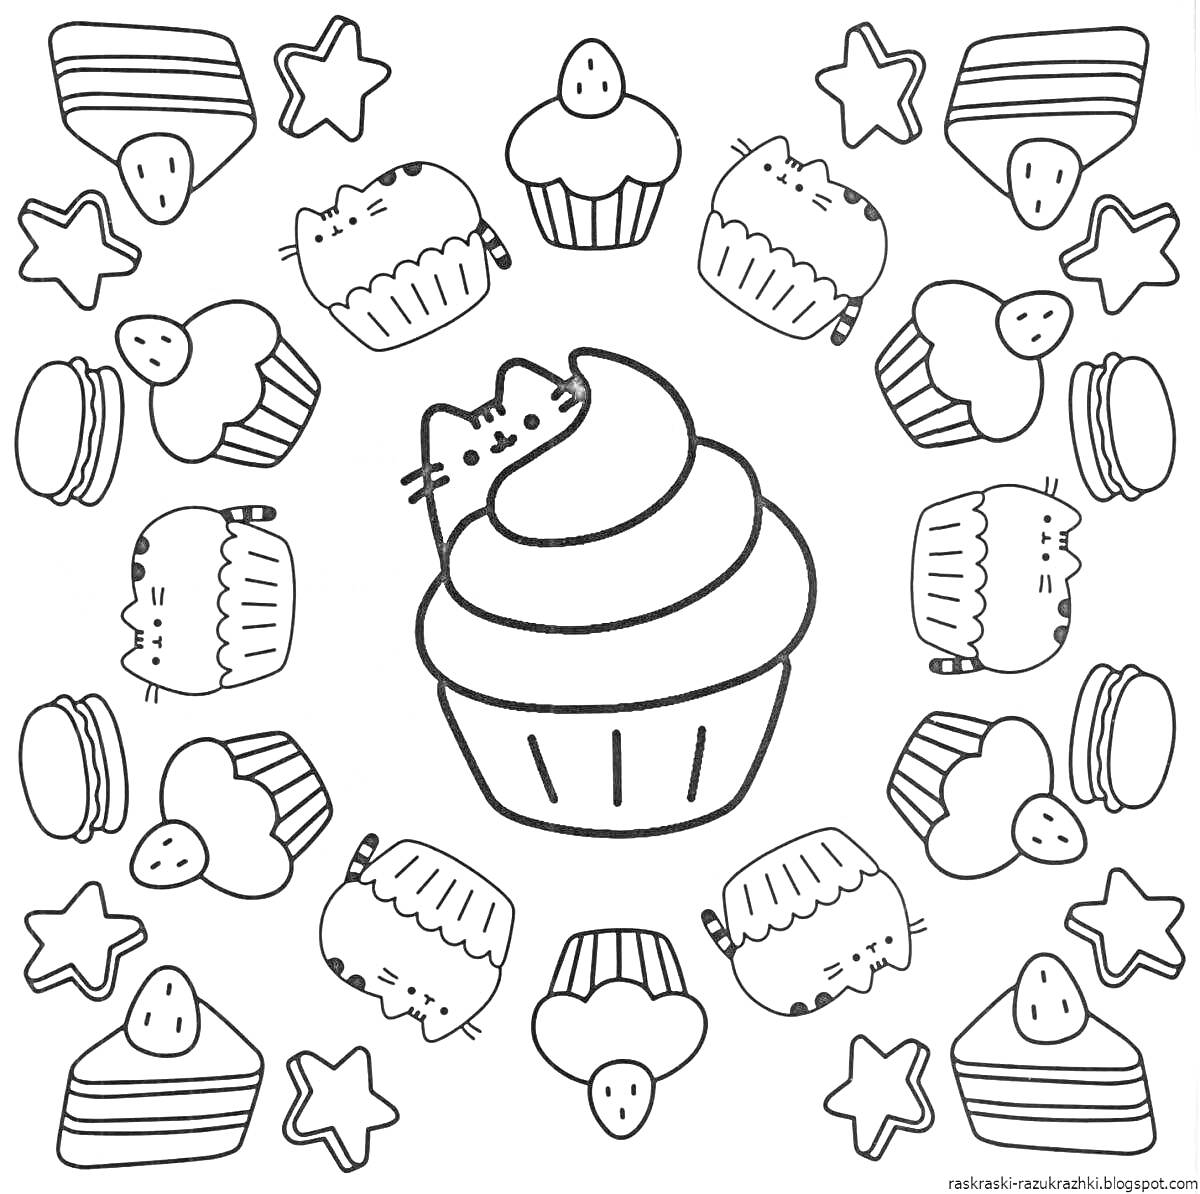 Раскраска Котик на большом кексе, маленькие кексы, пирожные, звездочки, сердечки